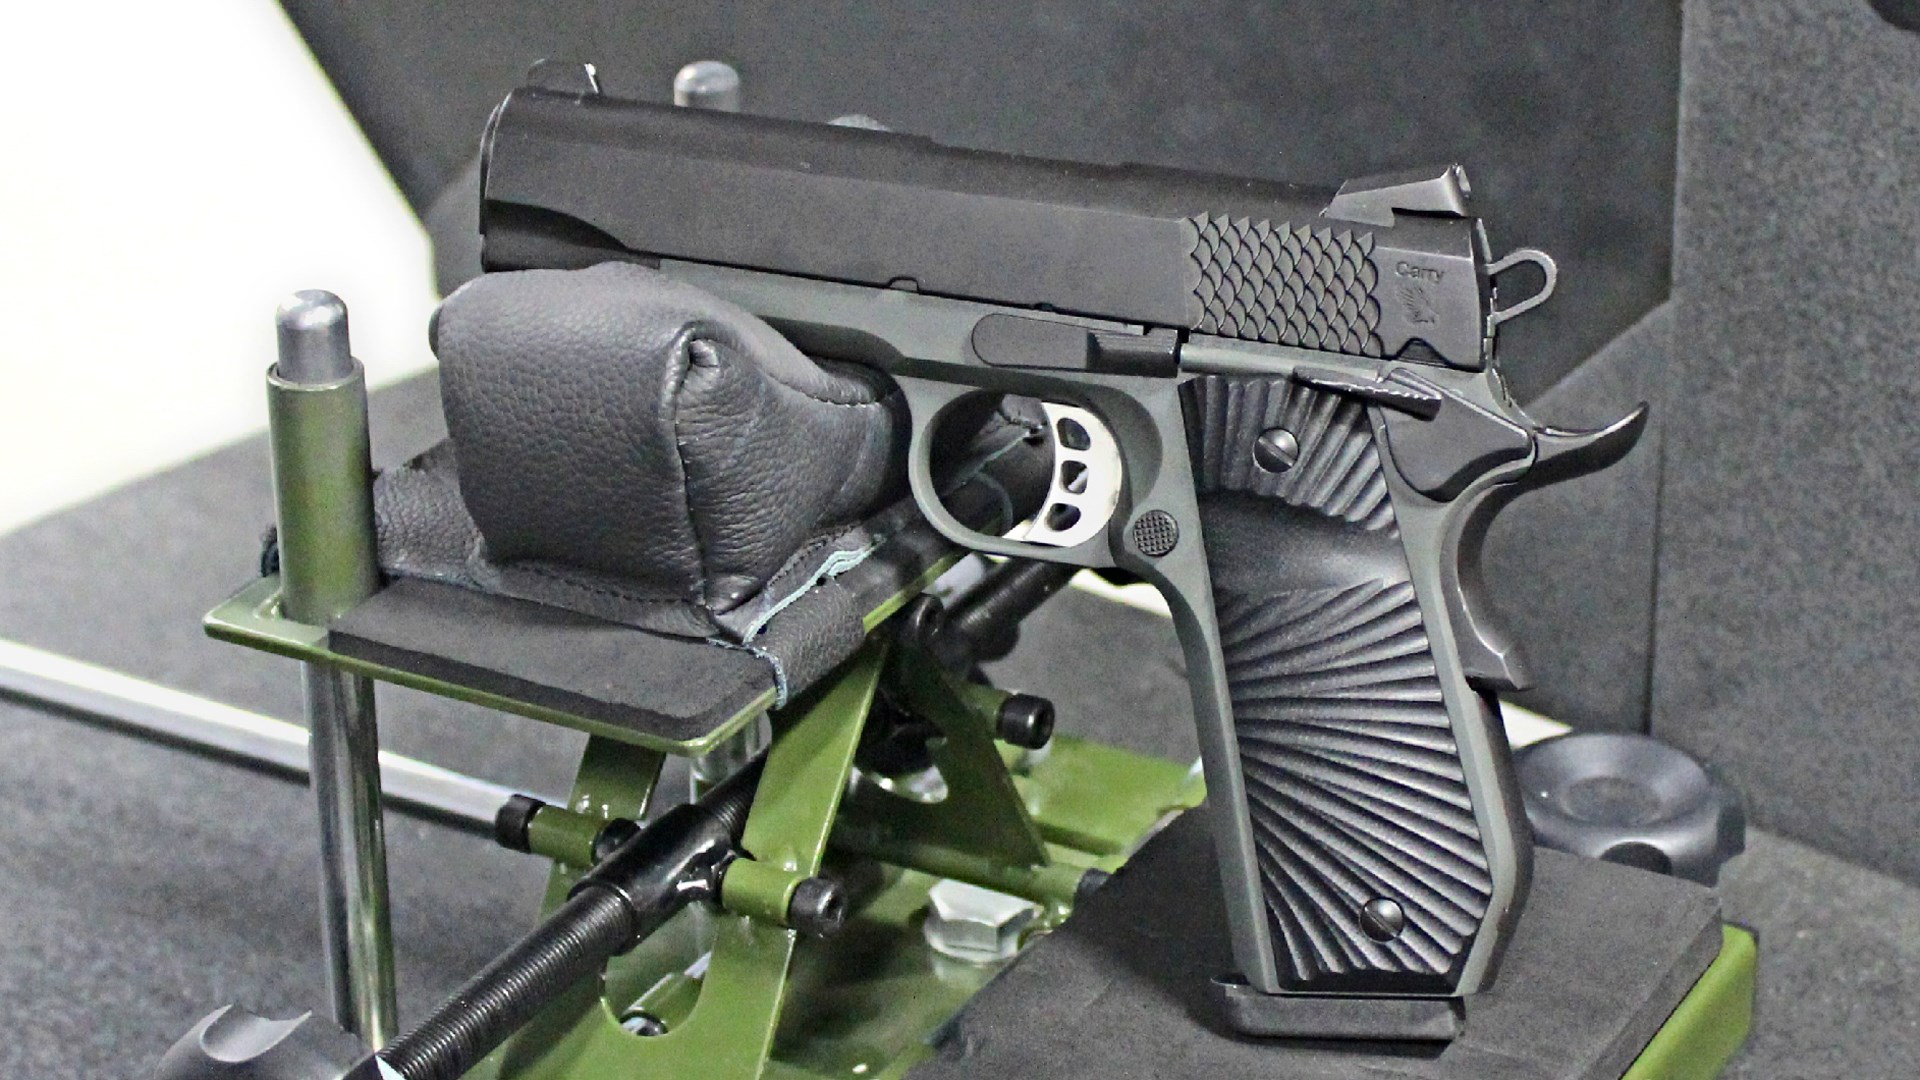 Tisas Stingray 1911 shooting range benchrest table gun pistol 9 mm